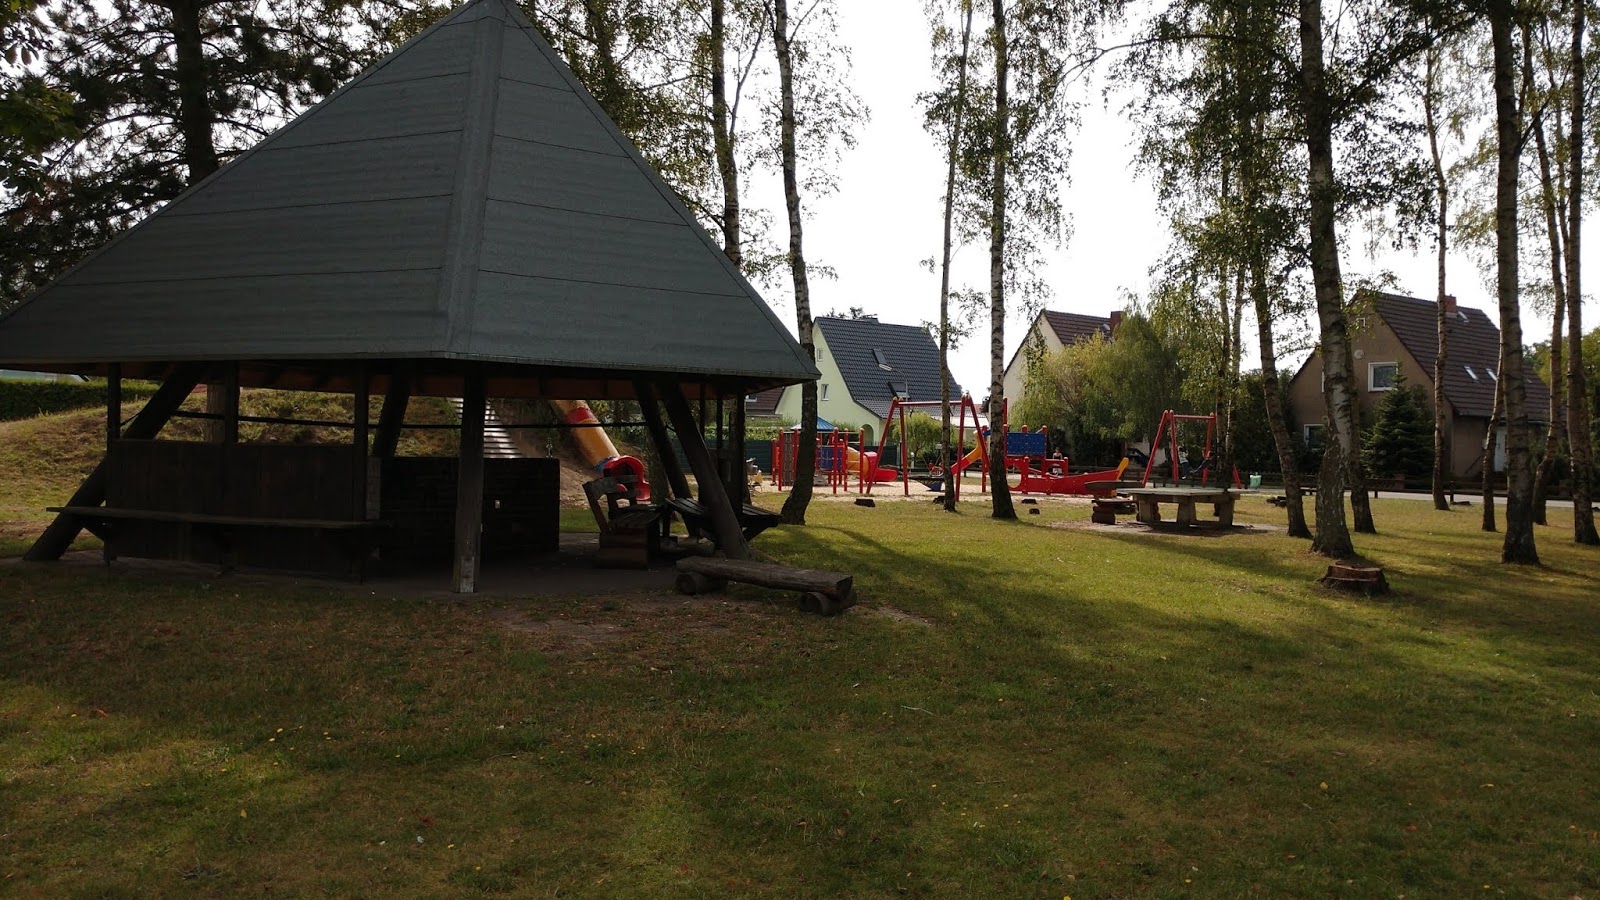 Grillhütte auf Spielplatz in Bokensdorf ständig zugemüllt